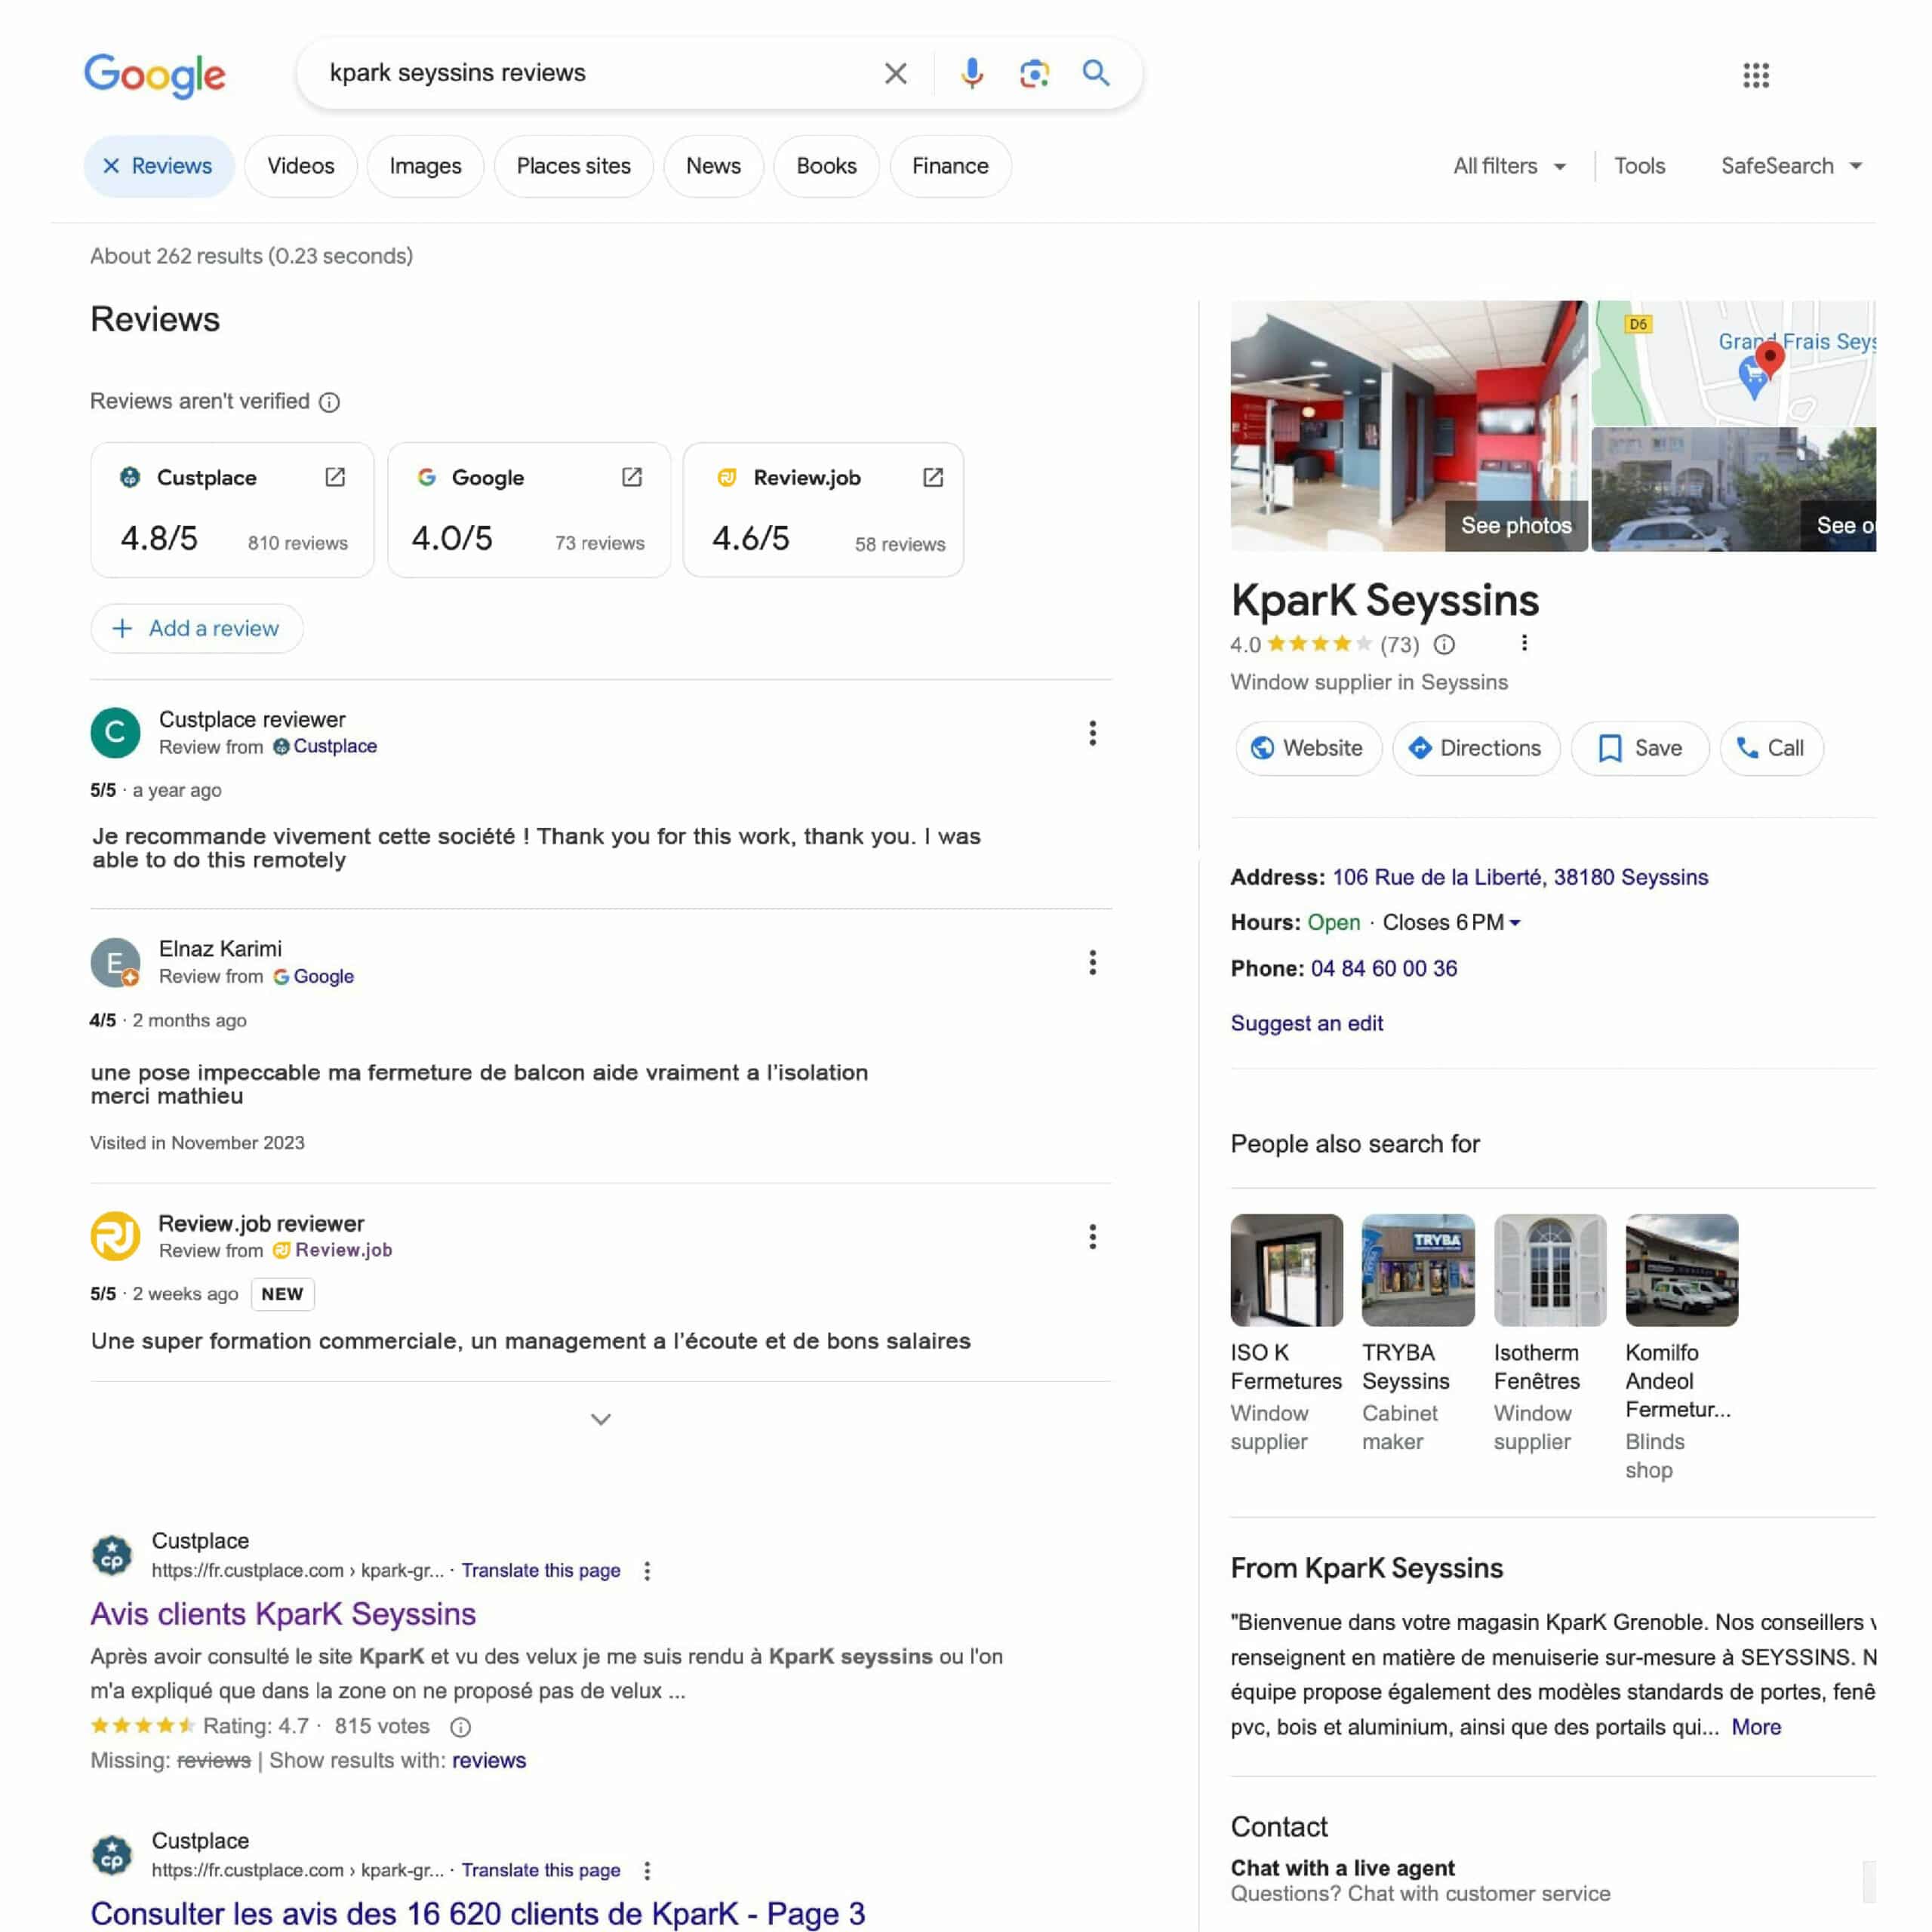 Google review pack, comme résultat de recherche de la requête "kpark seyssins reviews". Le Google review pack affiche les avis issus de Google, Custplace et Review.jobs avec les notes de chaque source.